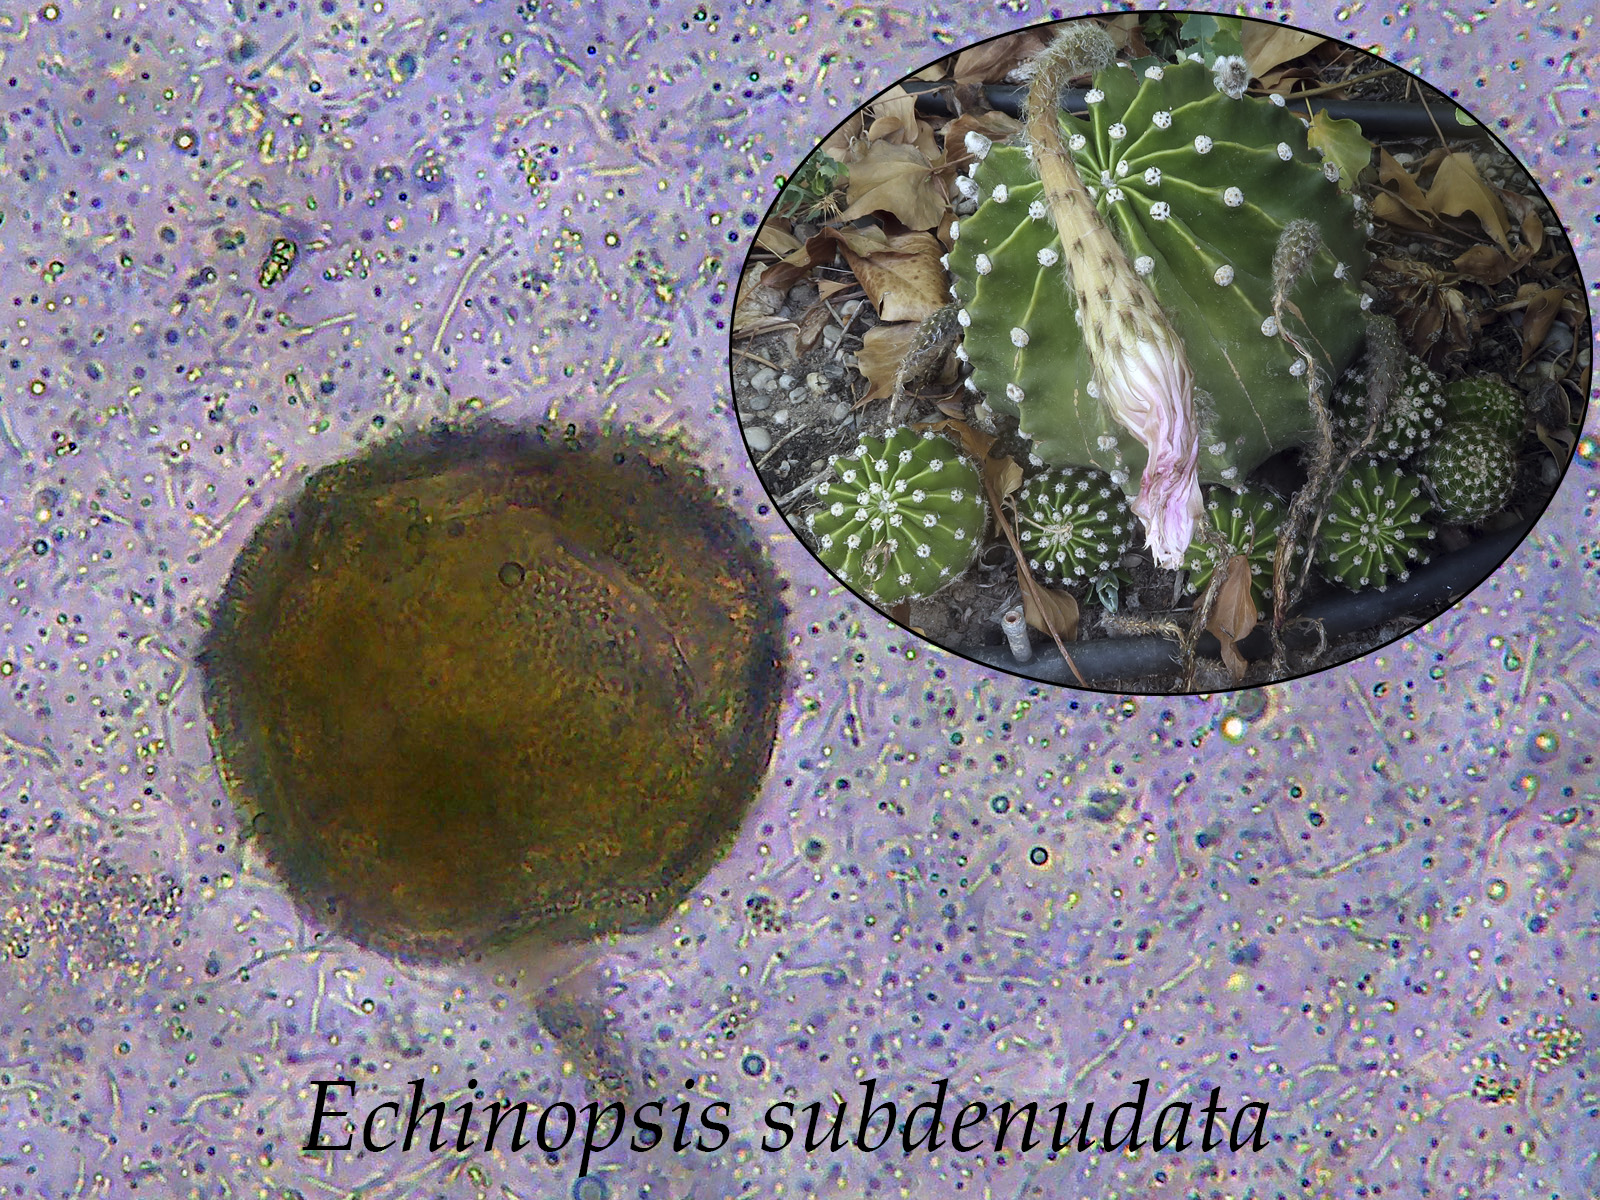 Echinopsissubdenudata.jpg